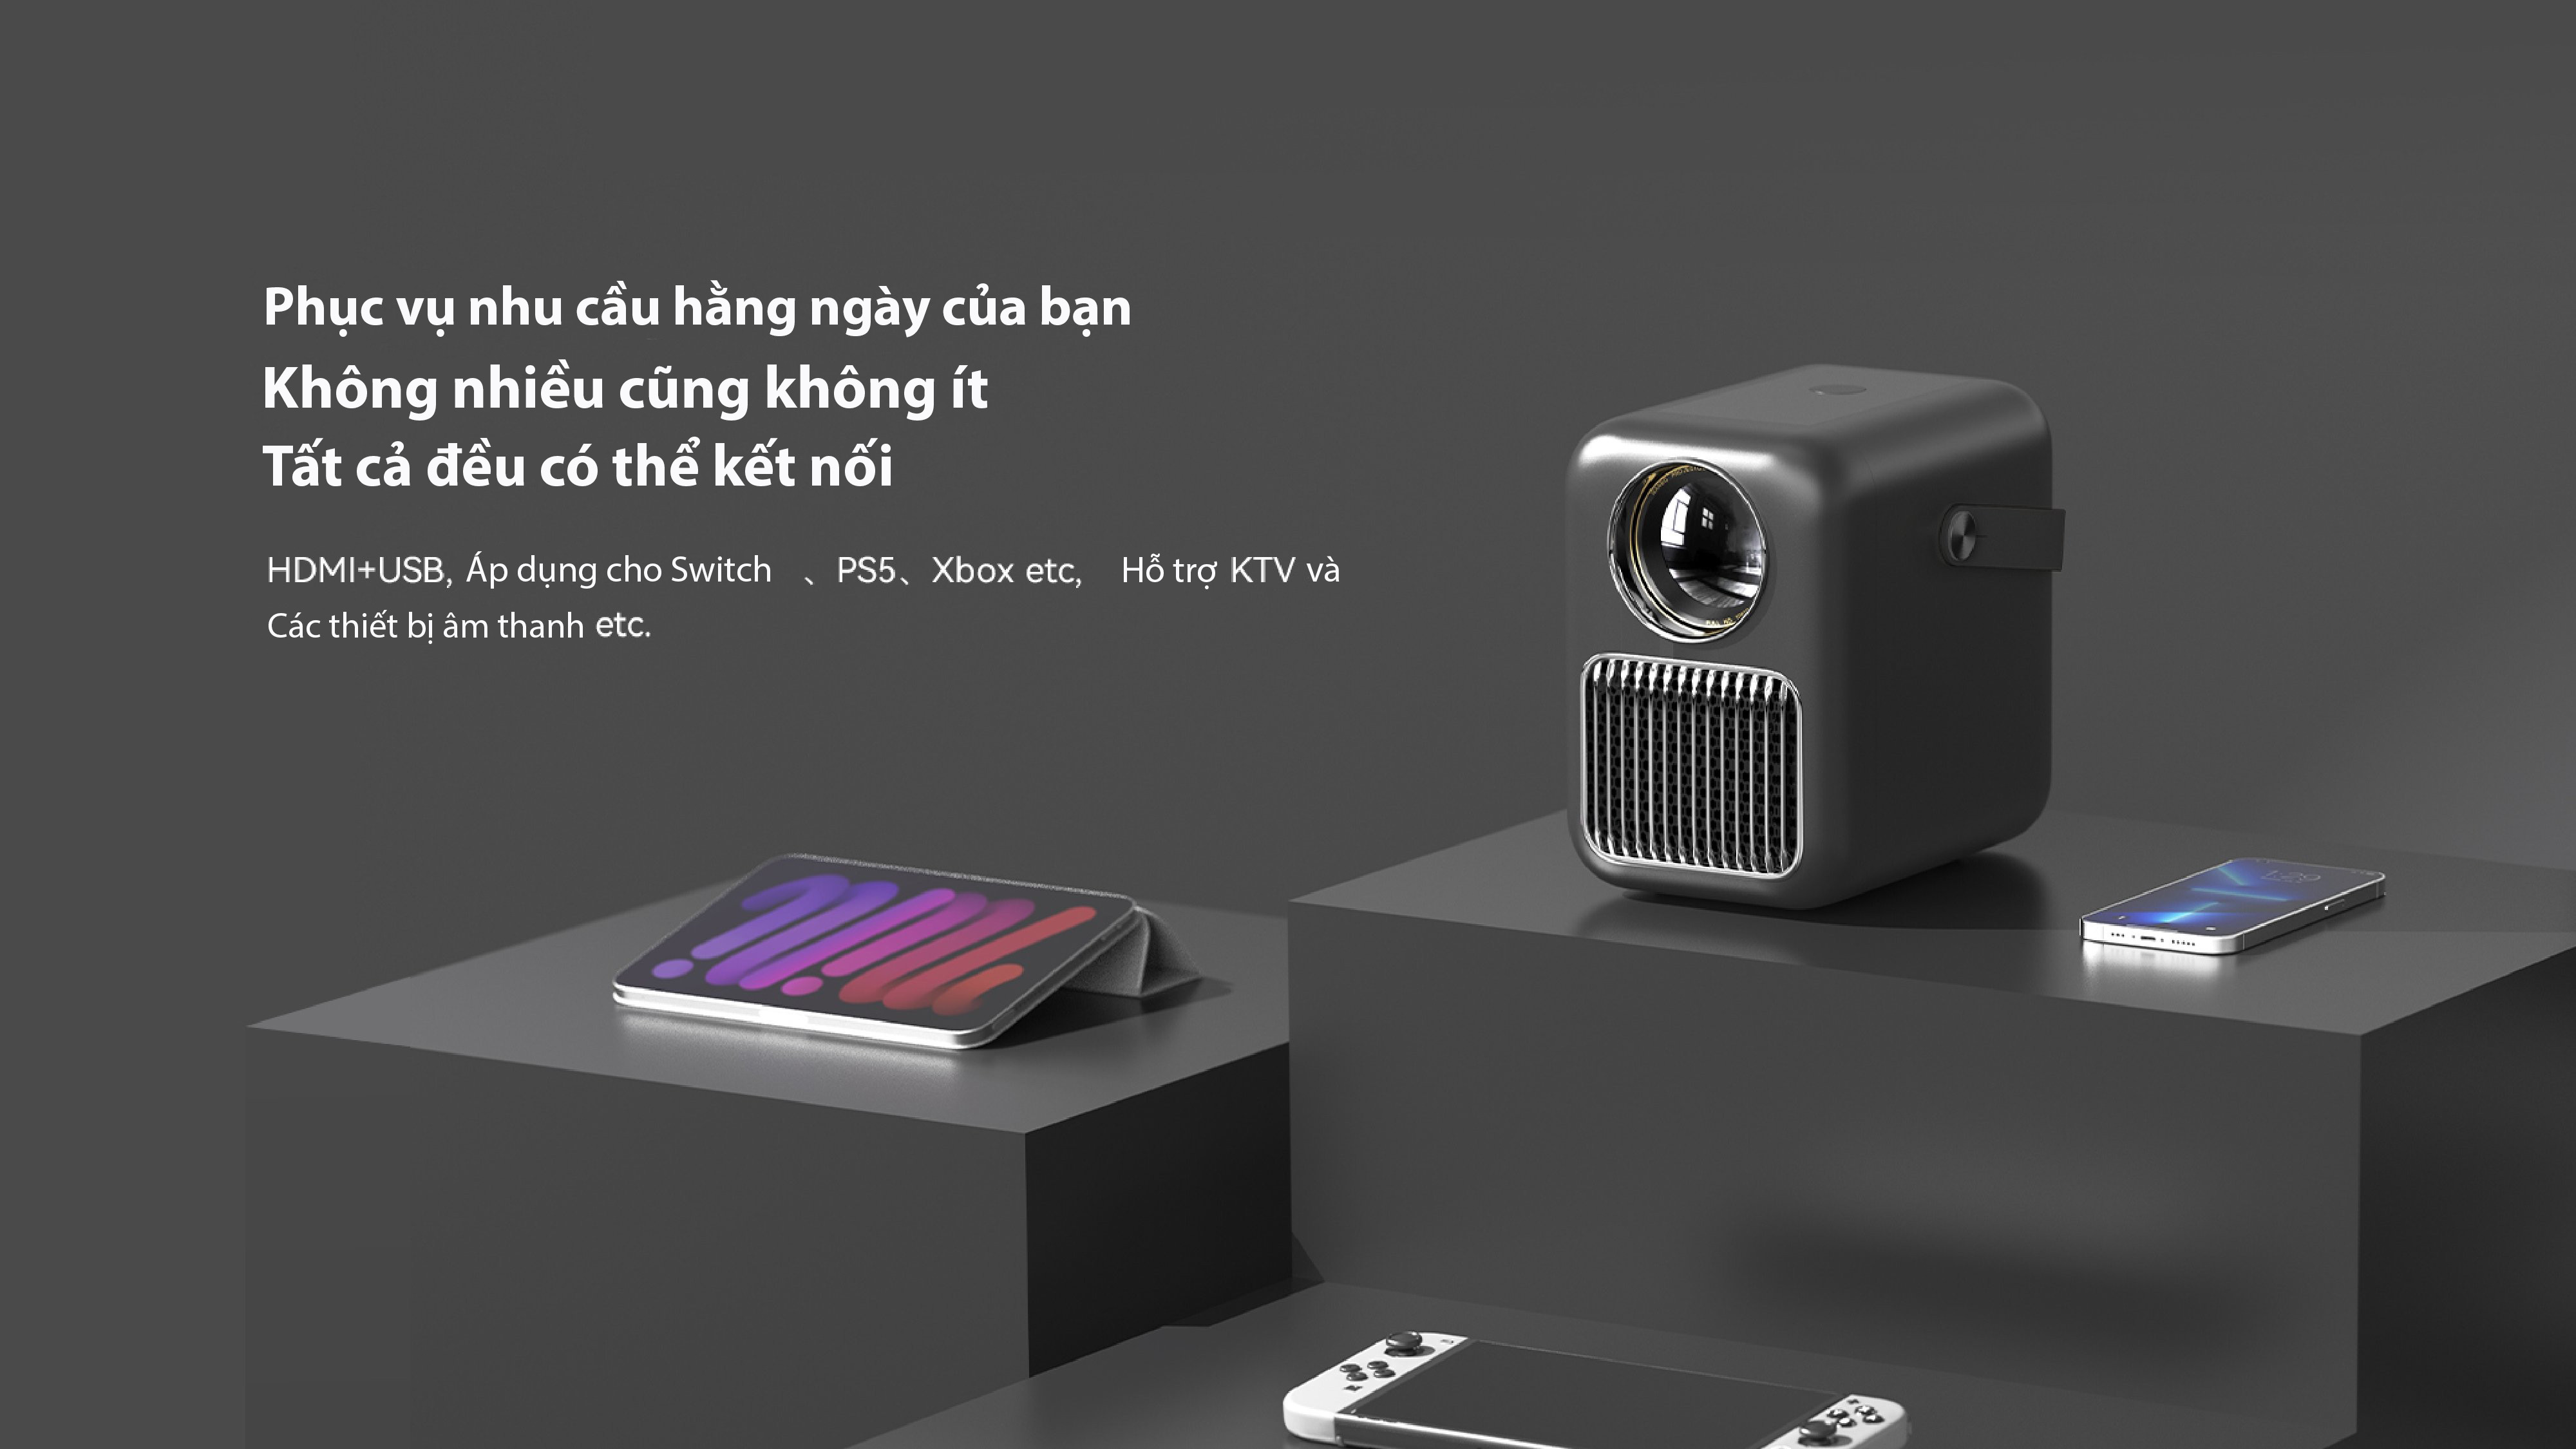 Máy Chiếu Xiaomi WANBO T6R MAX FULL HD 1080P ANDROID 9.0 Tự Động Lấy Nét - Hàng Chính Hãng - Màu Trắng/Đen